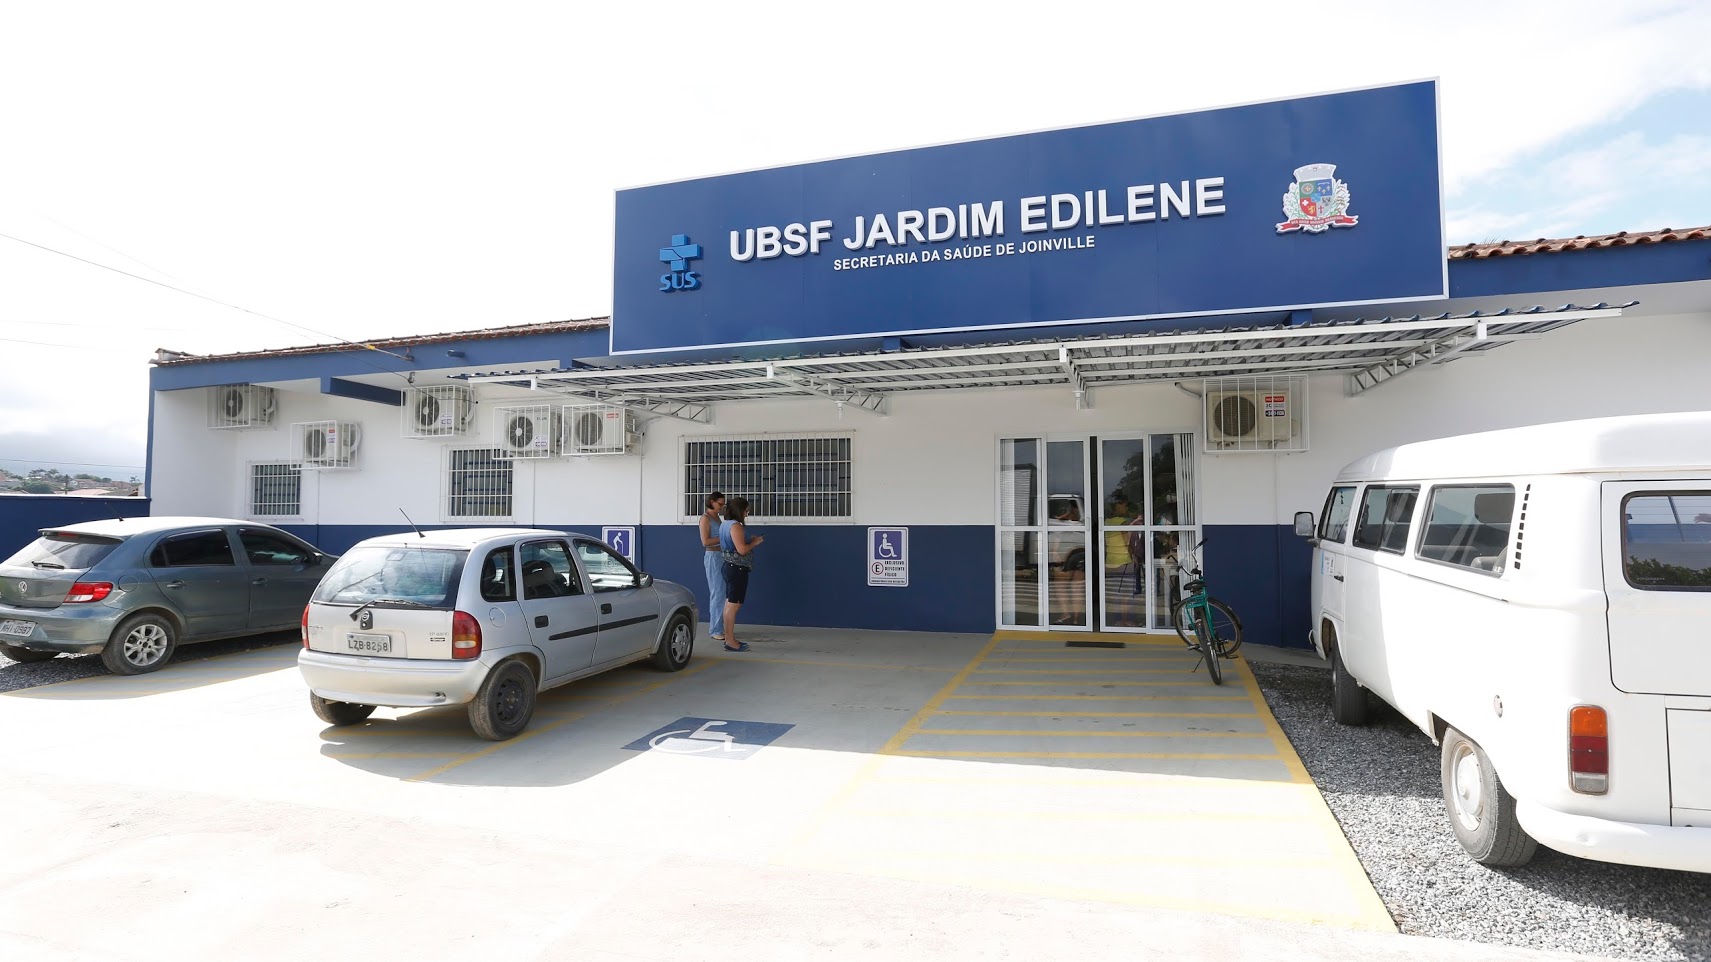 Joinville | UBSF Jardim Edilene é entregue revitalizada e com alvará sanitário